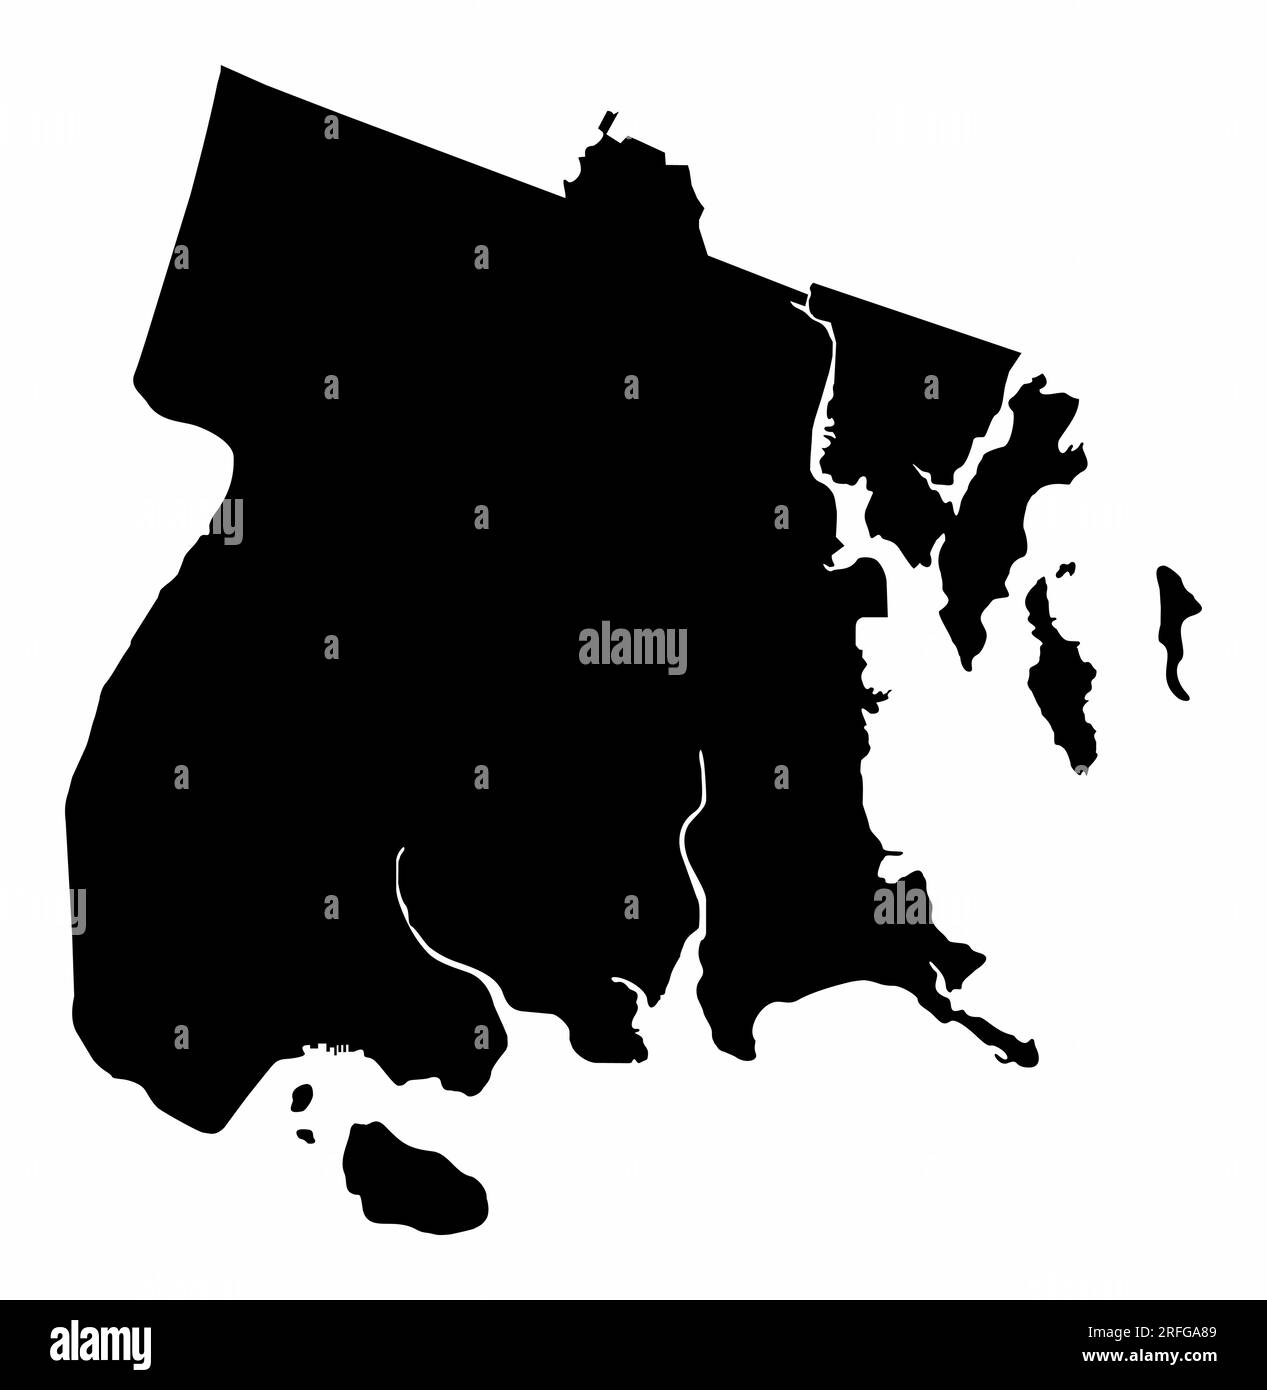 La silhouette de la carte du Bronx isolée sur fond blanc, New York City Illustration de Vecteur